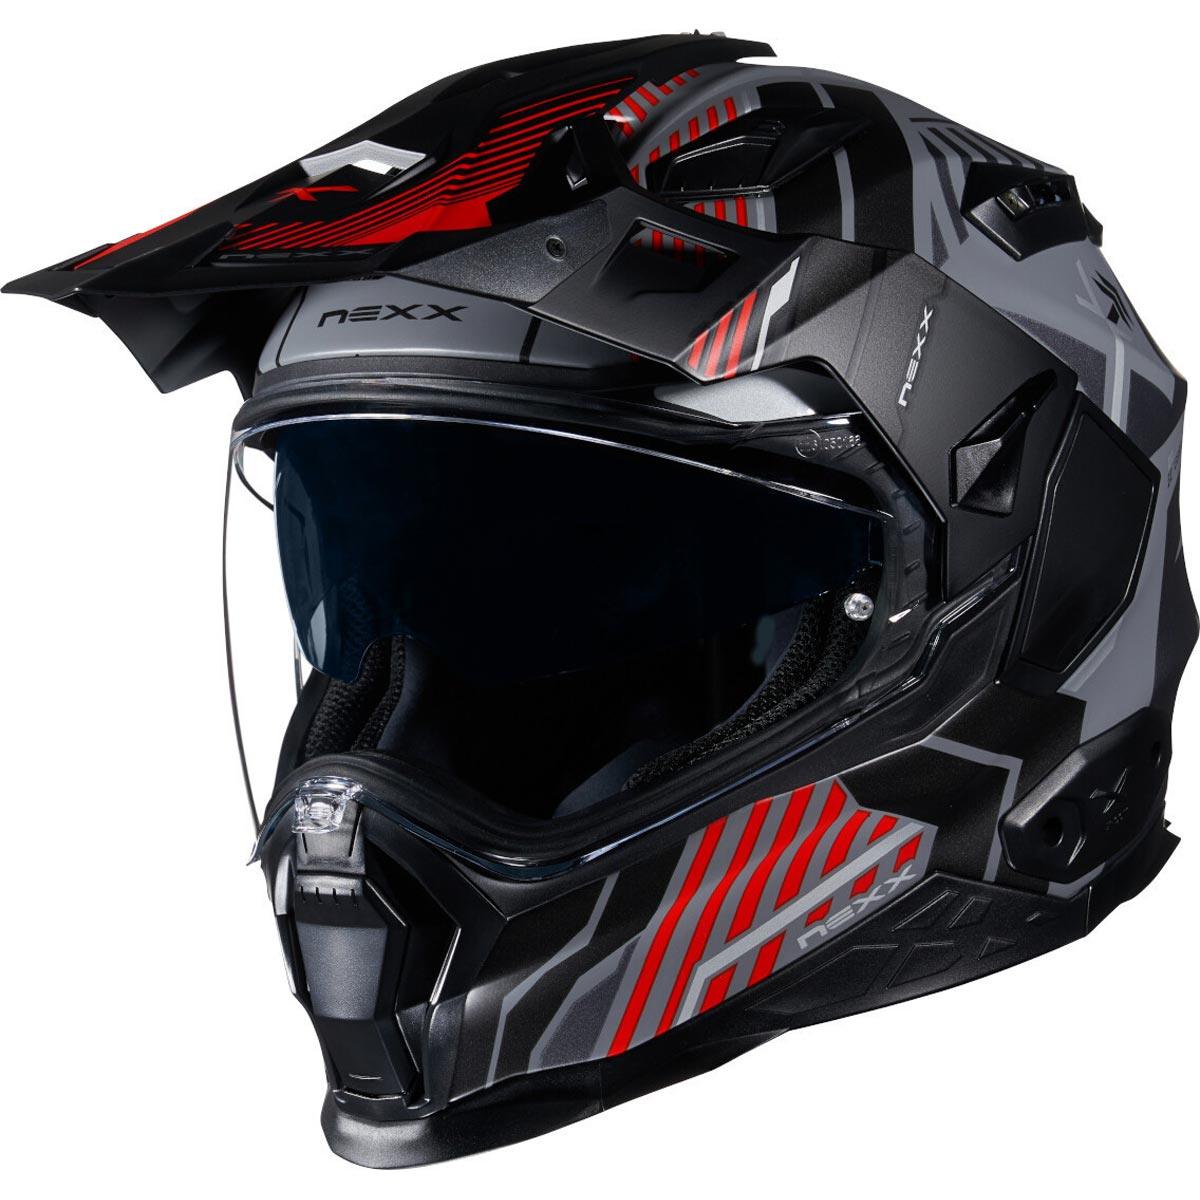 Nexx X.WED 2 Helmet Wild Country - Grey Red - getgearedshop